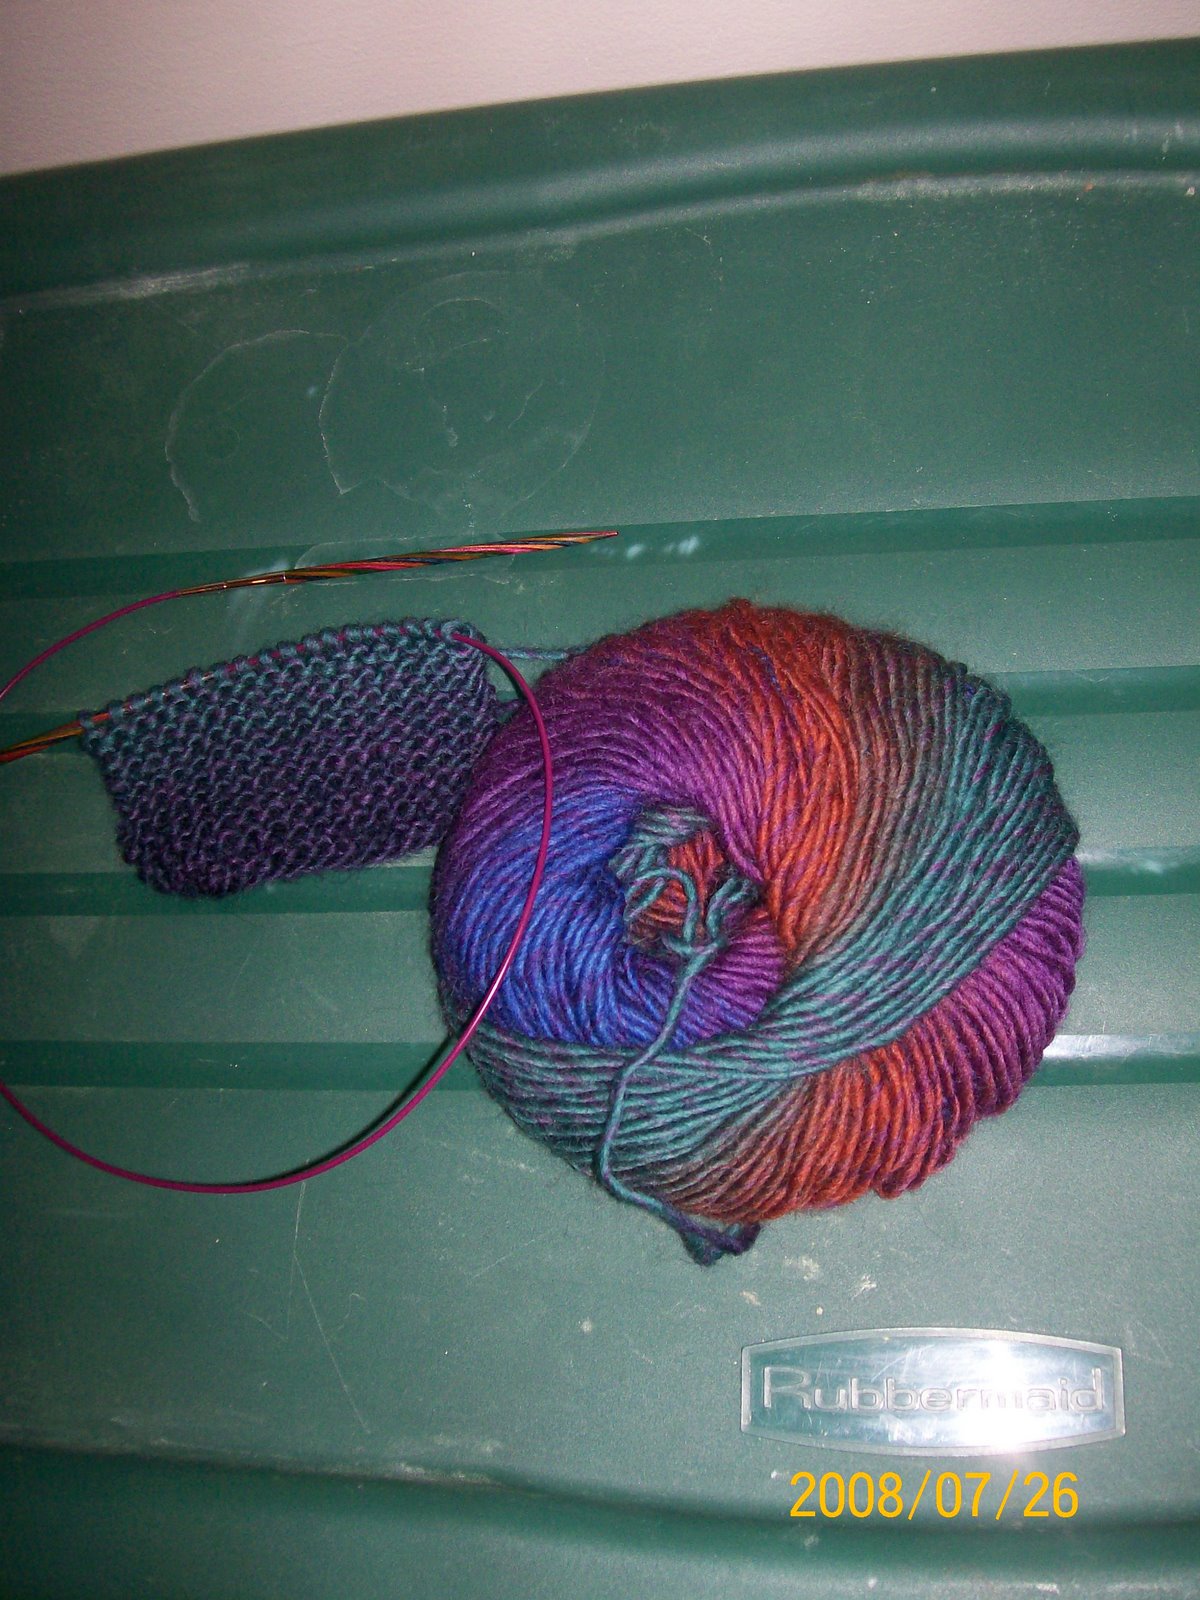 [July+26+2008+Knitting+Group+at+JPs+and+yarn+I+spun+029.jpg]